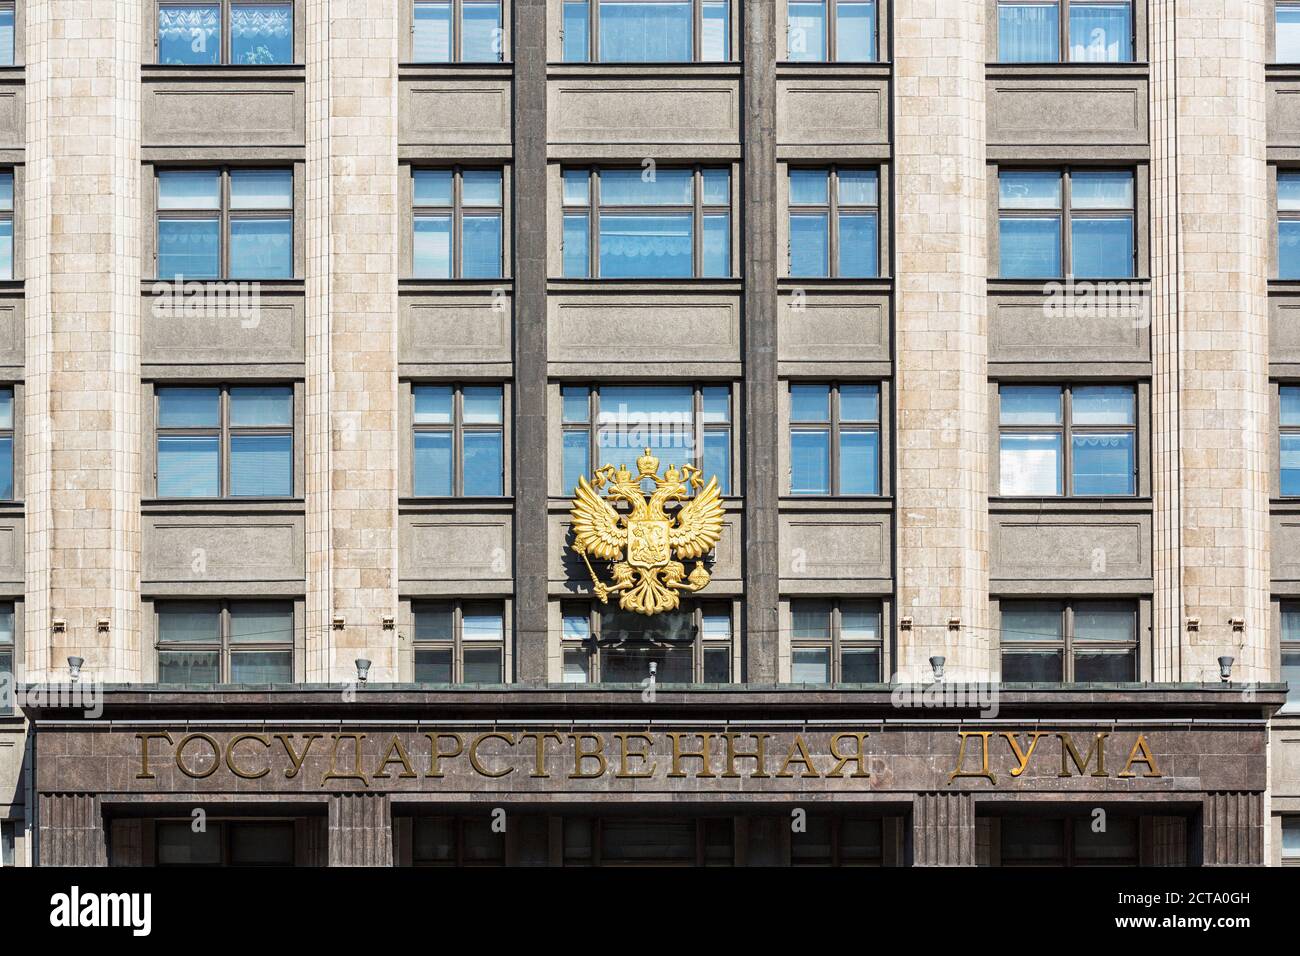 La Russie, le Centre de la Russie, Moscou, Douma d'État, chambre basse de l'Assemblée fédérale de Russie, Double Eagle sur la façade Banque D'Images